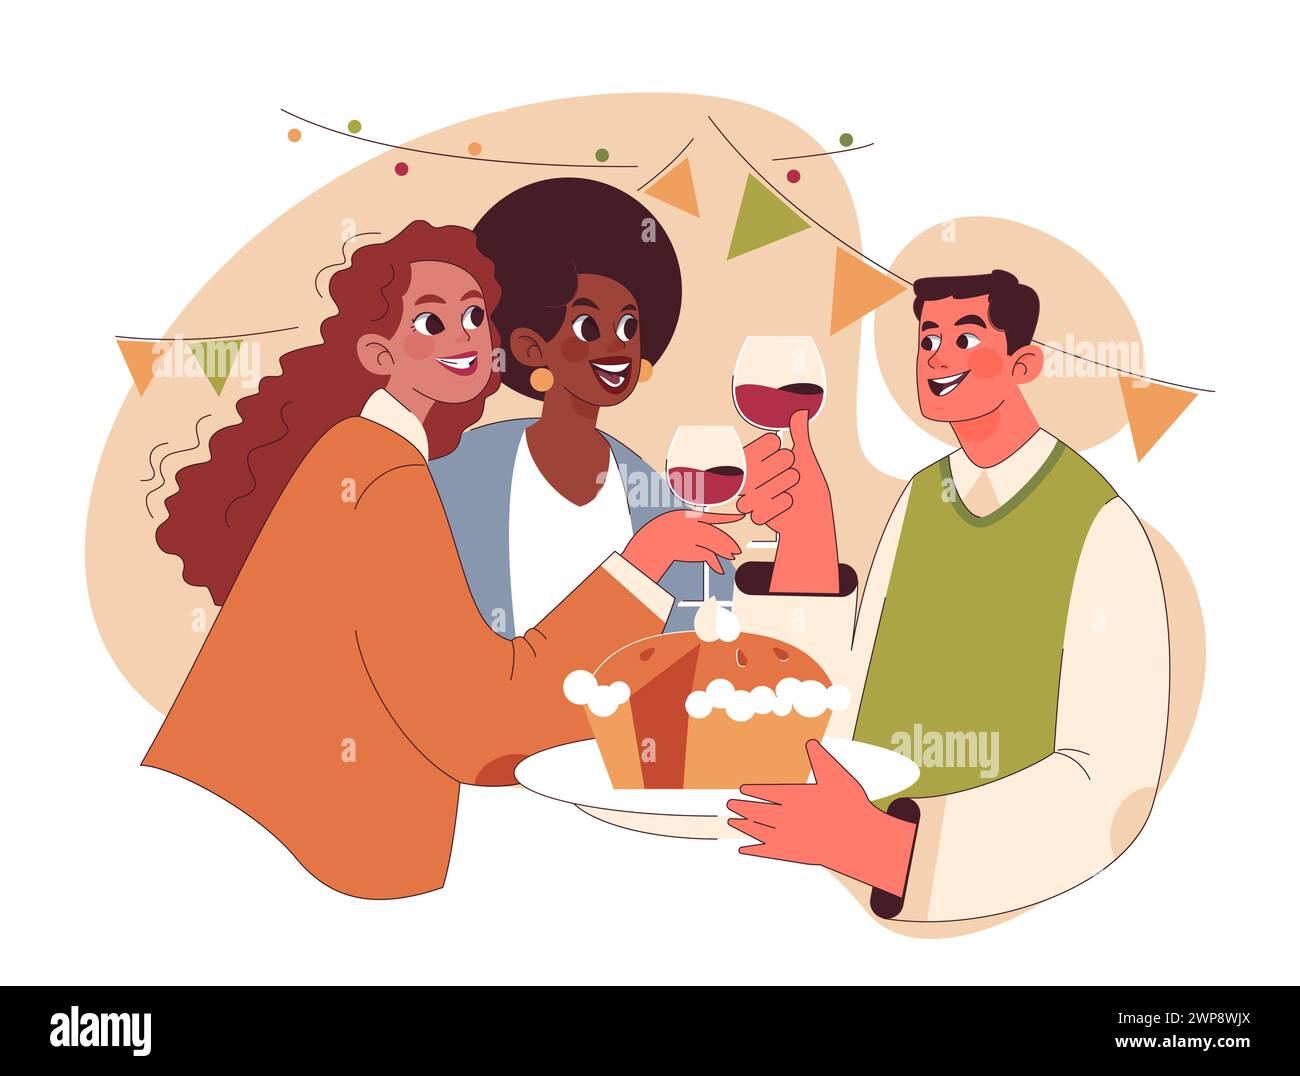 Fröhliche Familie feiert Thanksgiving. Amerikanische Feiertagsessen und -Treffen. Glückliche Freunde, die Zeit miteinander verbringen. Illustration des flachen Vektors Stock Vektor